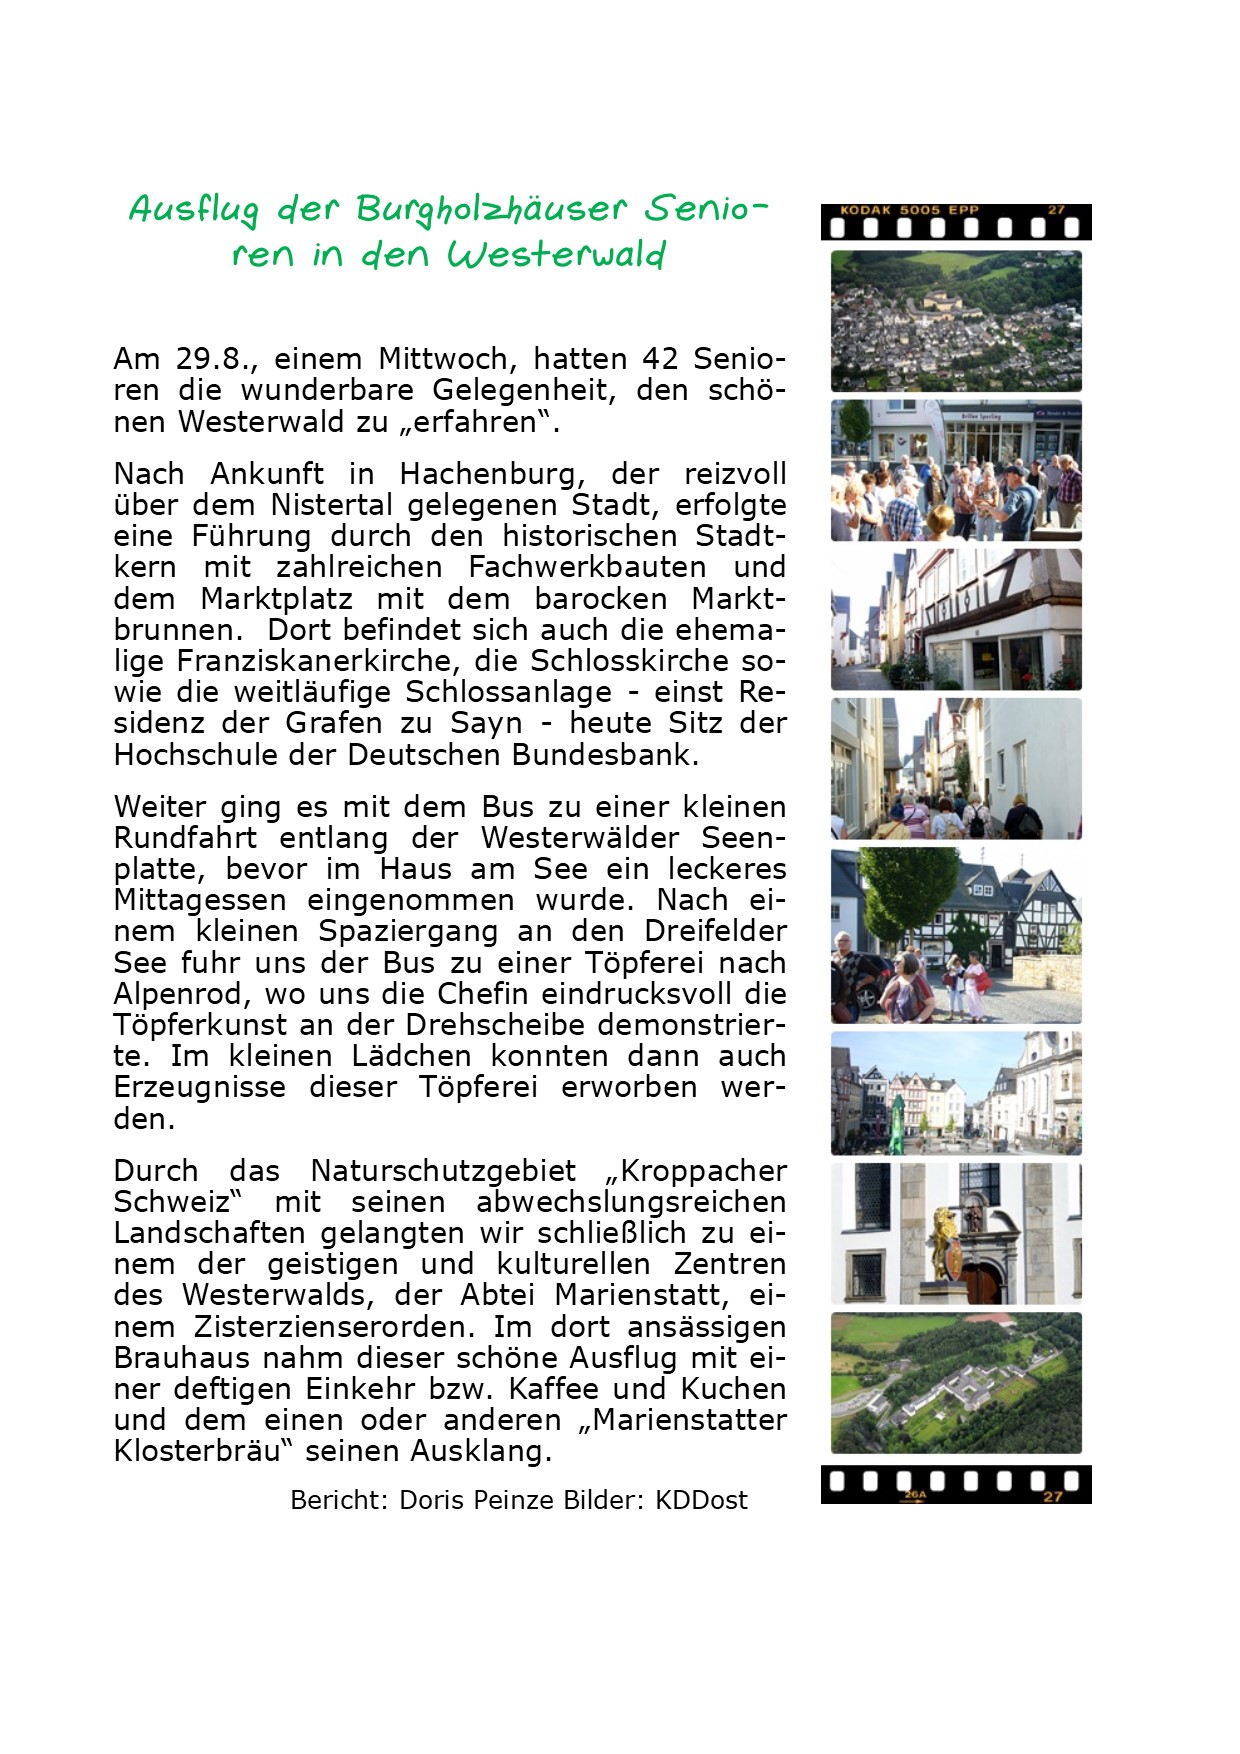 Burgholzhäuser Senioren im Westerwald 29.08.2018